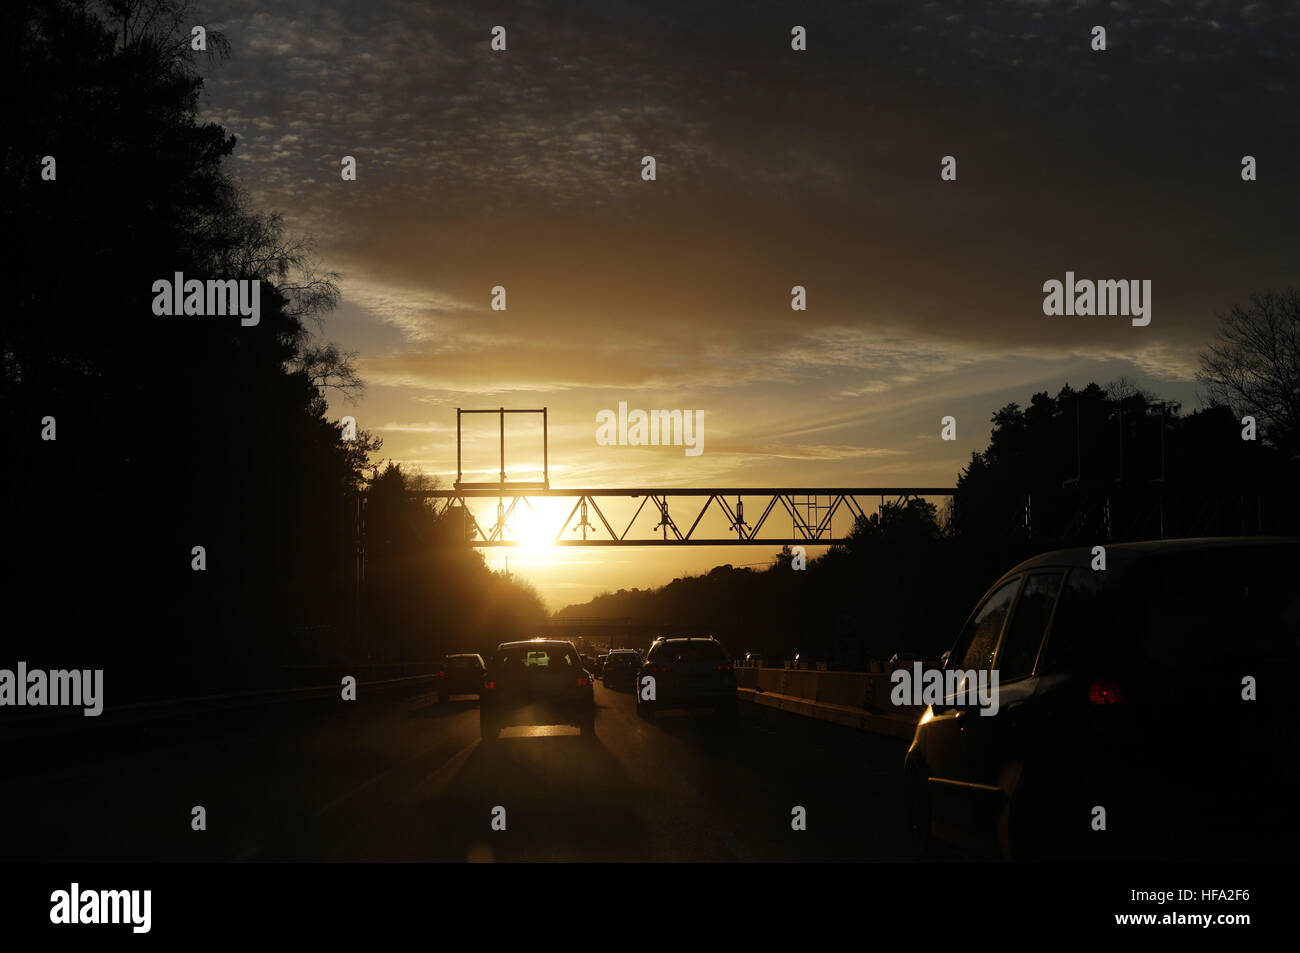 Die Sonne geht auf Autos Reisen entlang der Autobahn M3 in Hampshire. PRESSEVERBAND Foto. Bild Datum: Donnerstag, 22. Dezember 2016. Bildnachweis sollte lauten: Yui Mok/PA Wire Stockfoto